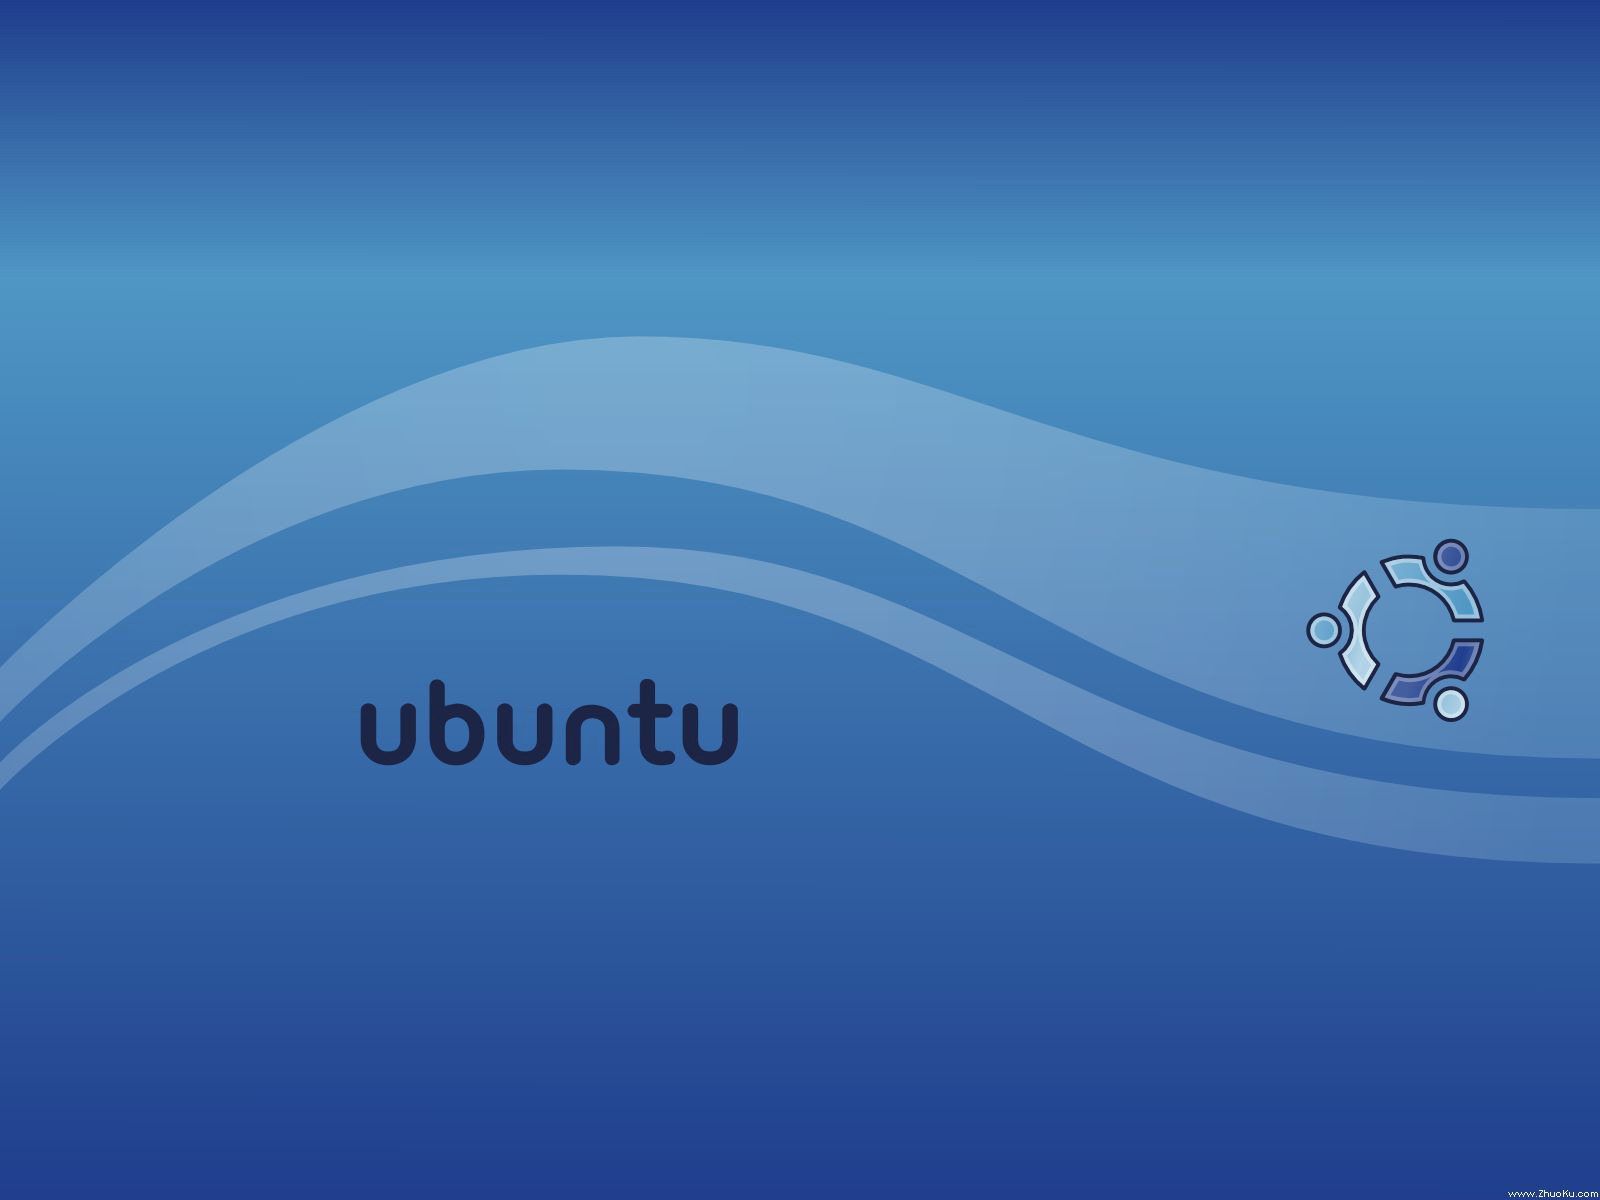 壁纸1600x1200Ubuntu Linux 作业系统1024 768 1280 1024 1600 1200 壁纸26壁纸 Ubuntu Lin壁纸 Ubuntu Lin图片 Ubuntu Lin素材 系统壁纸 系统图库 系统图片素材桌面壁纸